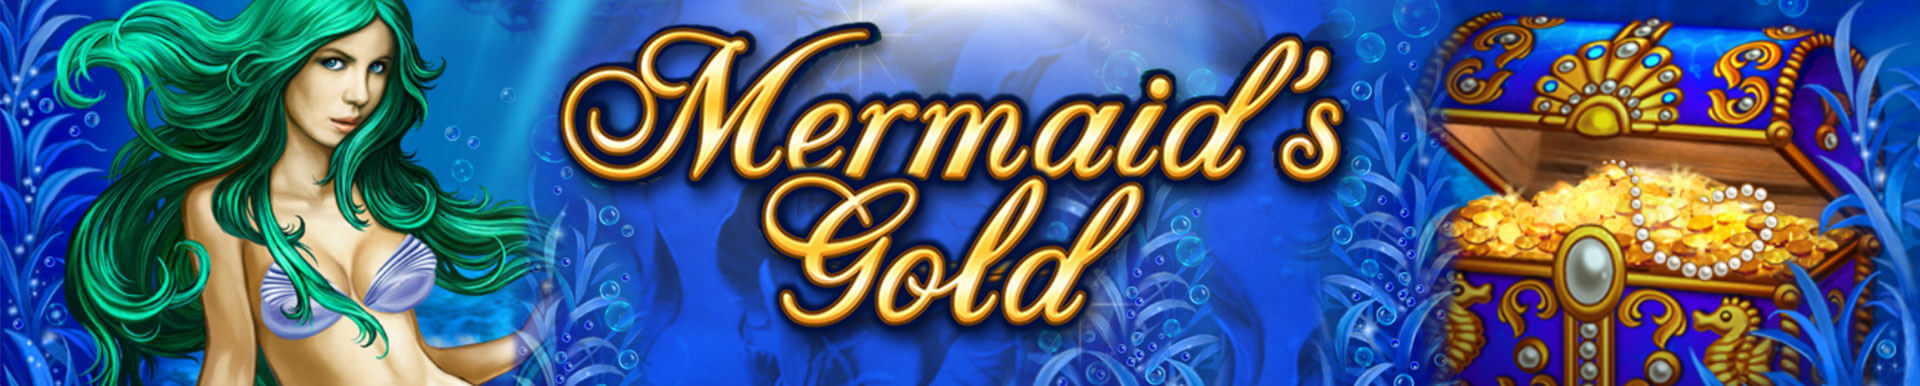 Mermaids Gold Casino